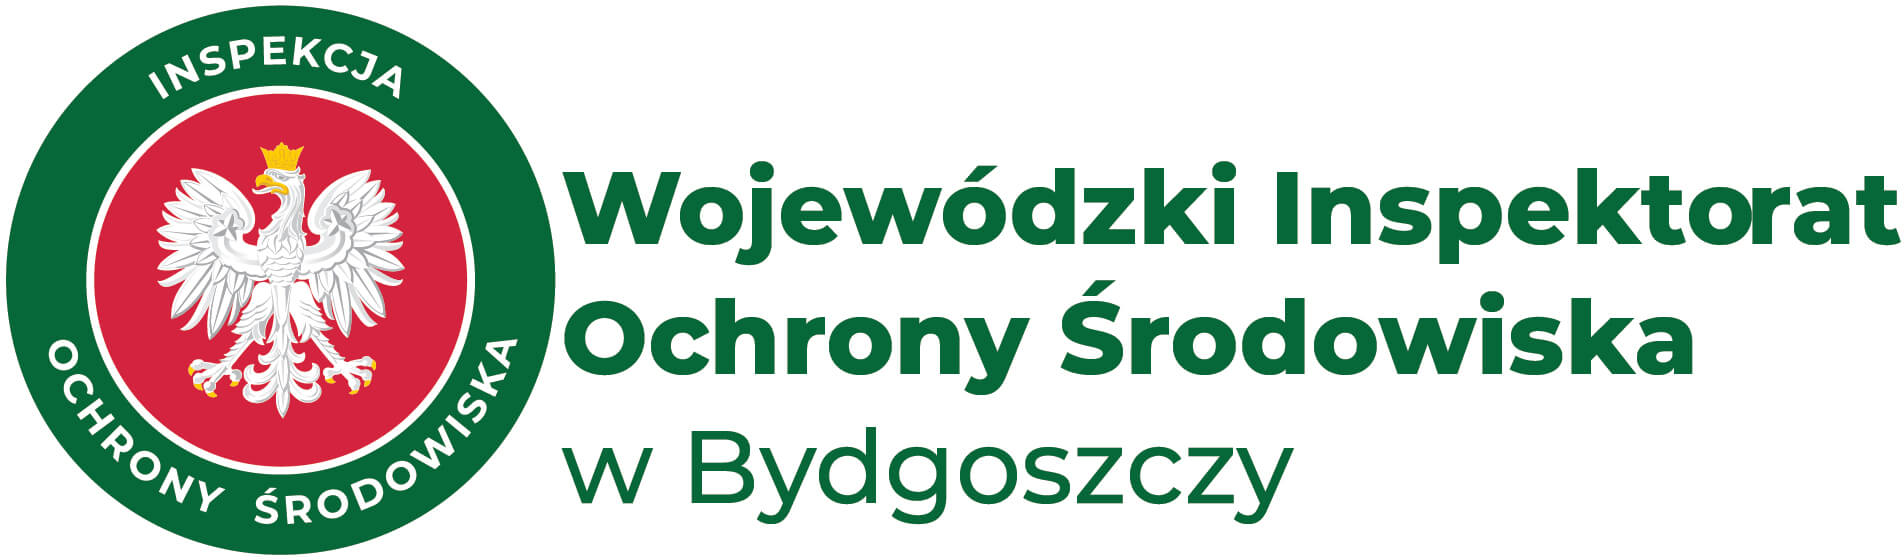 Wojewódzki Inspektorat Ochrony Środowiska w Bydgoszczy